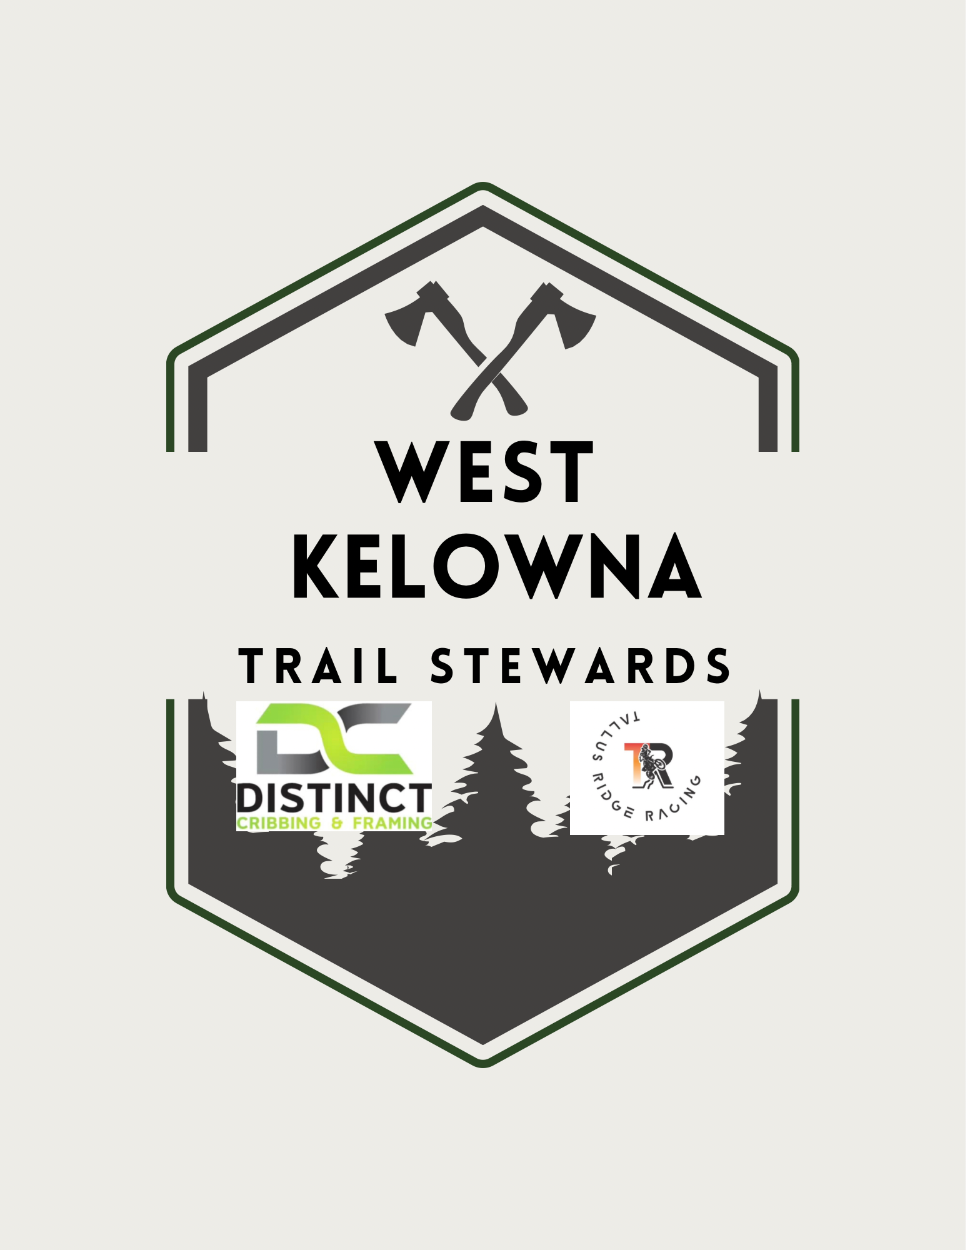 West Kelowna Trail Stewards